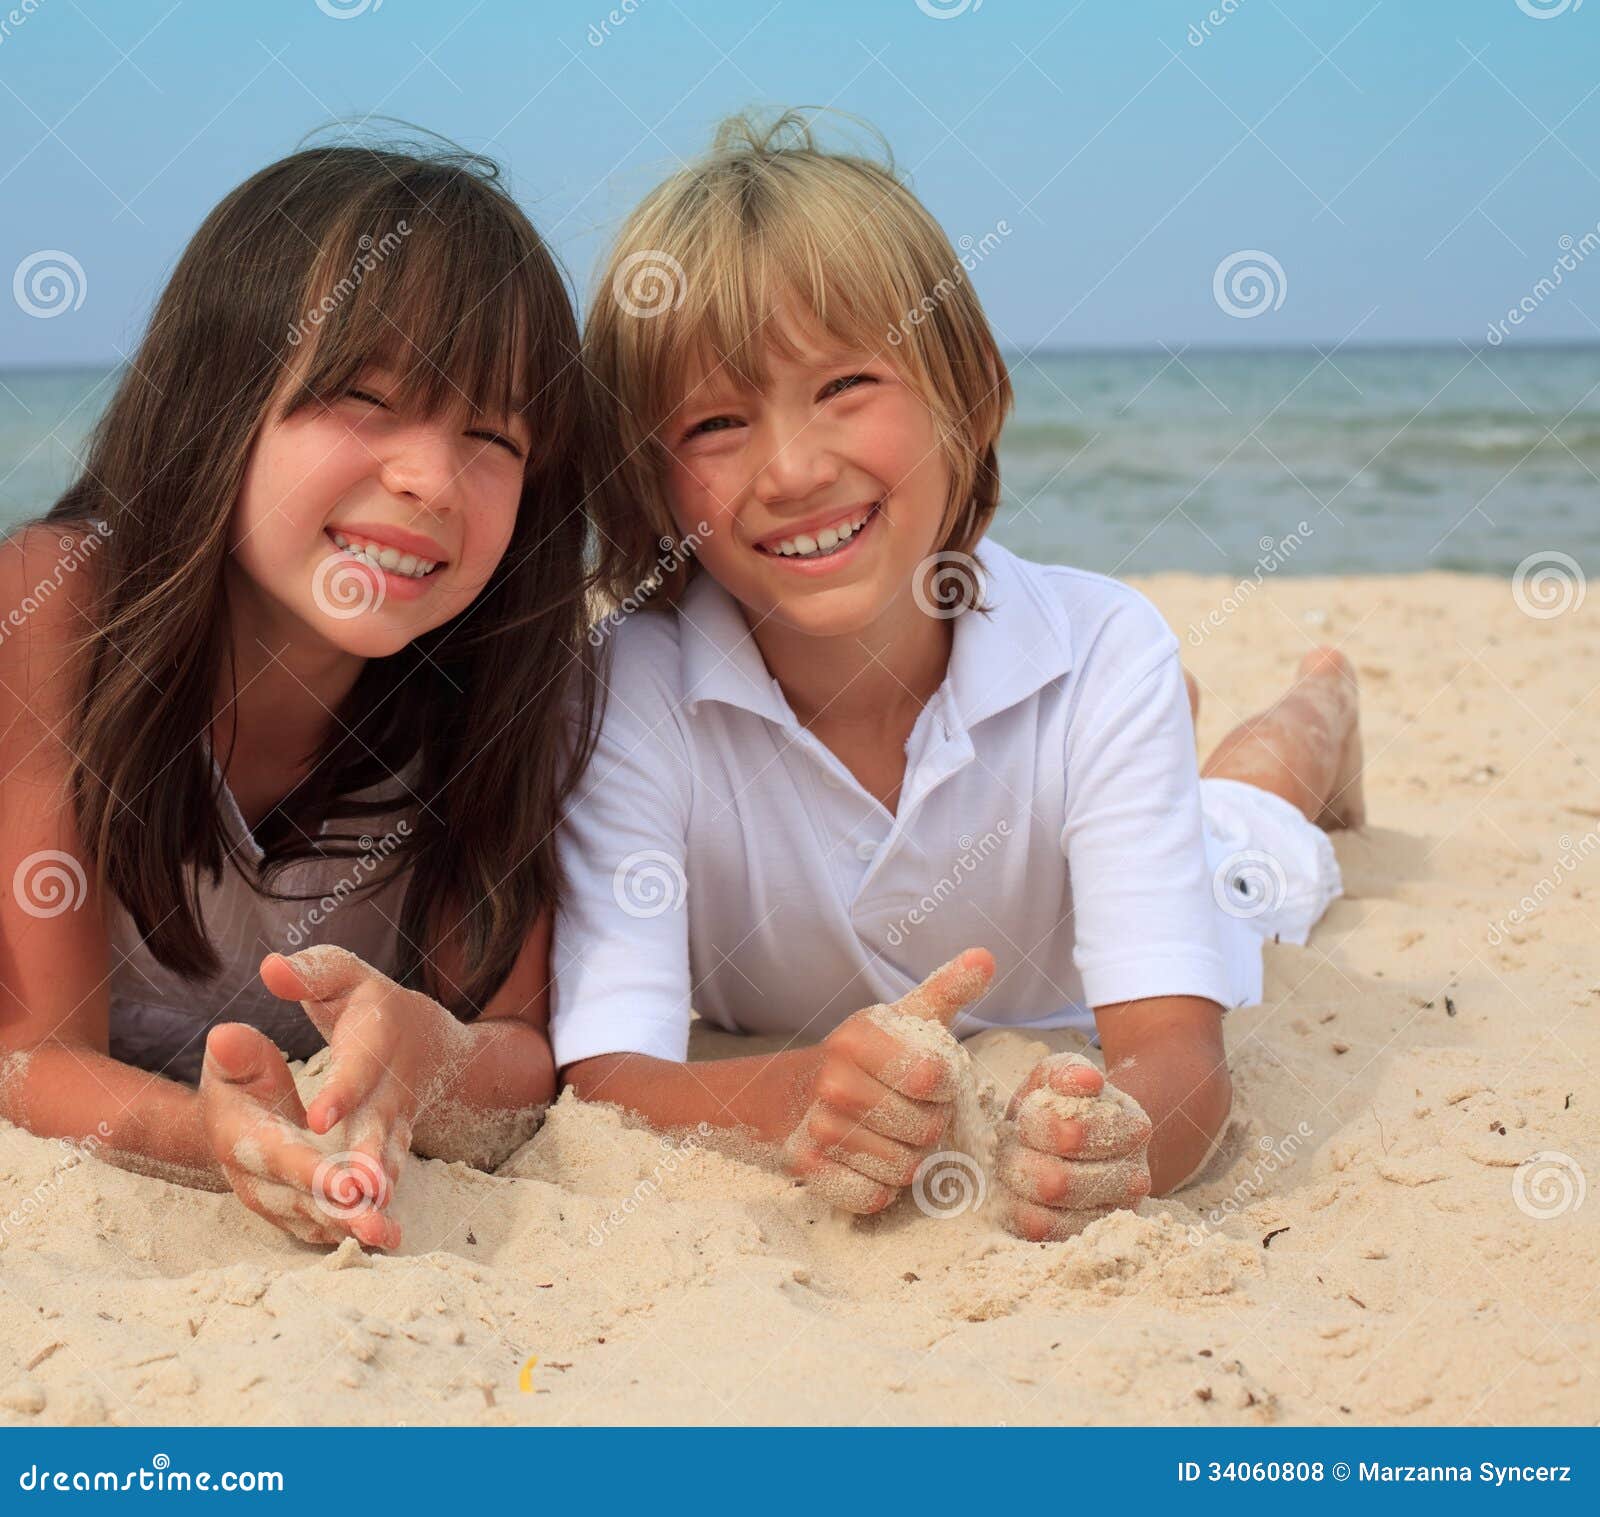 Irmãos na praia. A irmã e o irmão novos colocam junto em uma praia ensolarada.